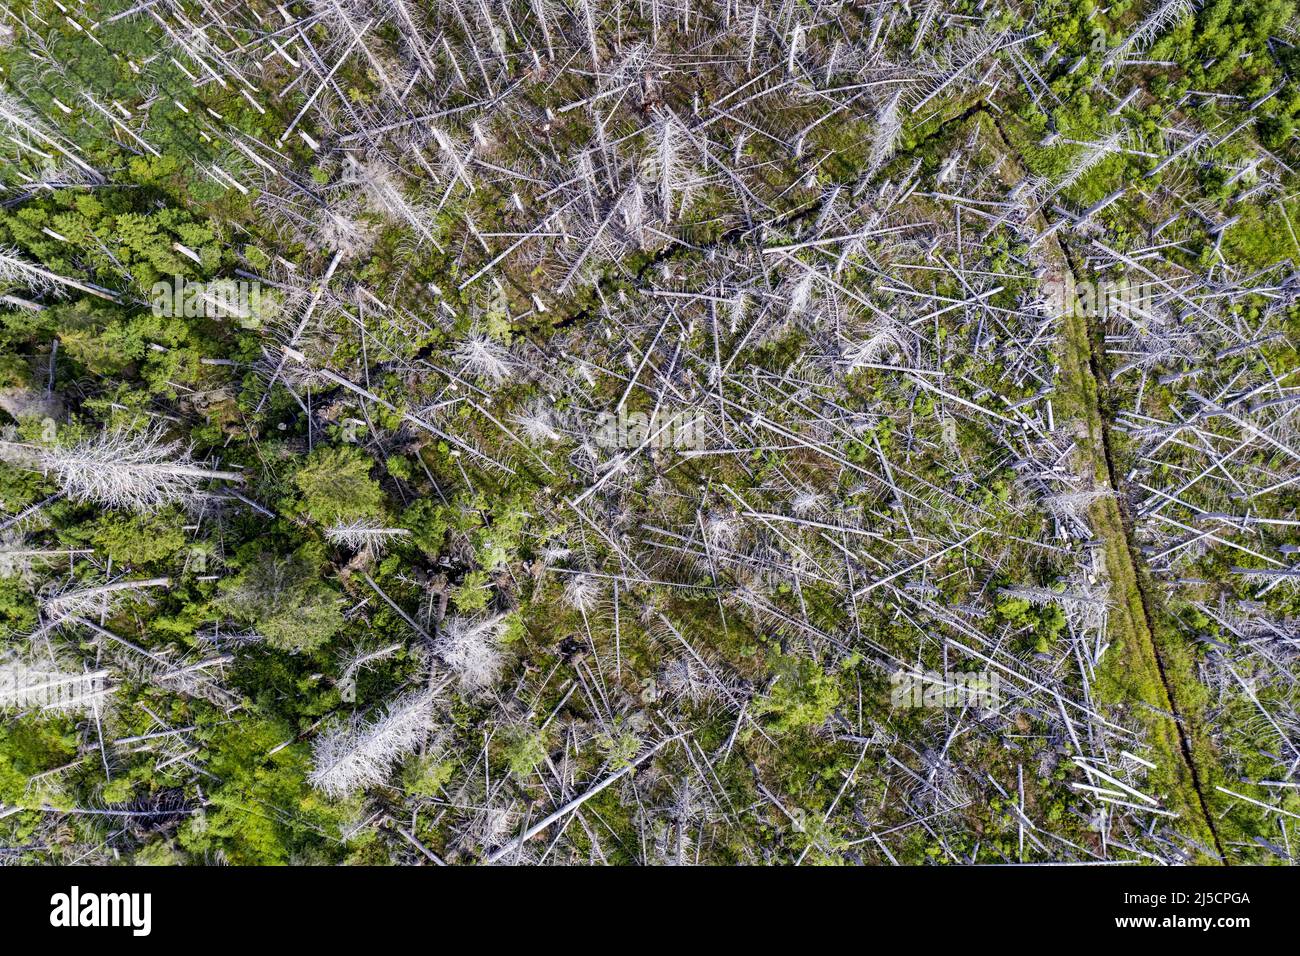 Oderbrueck, DEU, 19.07.2020 - veduta aerea di alberi di abete morto, a causa dell'infestazione del coleottero della corteccia. Le silhouette grigie di spruche morte si innalzano nel cielo o si stendono selvaggiamente l'una sull'altra. Ma anche se molti alberi morti possono essere visti, questa foresta è viva e dinamica come raramente prima. Nel Parco Nazionale dell'Harz gli scarafaggi non sono combattuti. Essi contribuiscono a trasformare le foreste precedentemente gestite in foreste naturali e selvatiche con una varietà di strutture. [traduzione automatizzata] Foto Stock